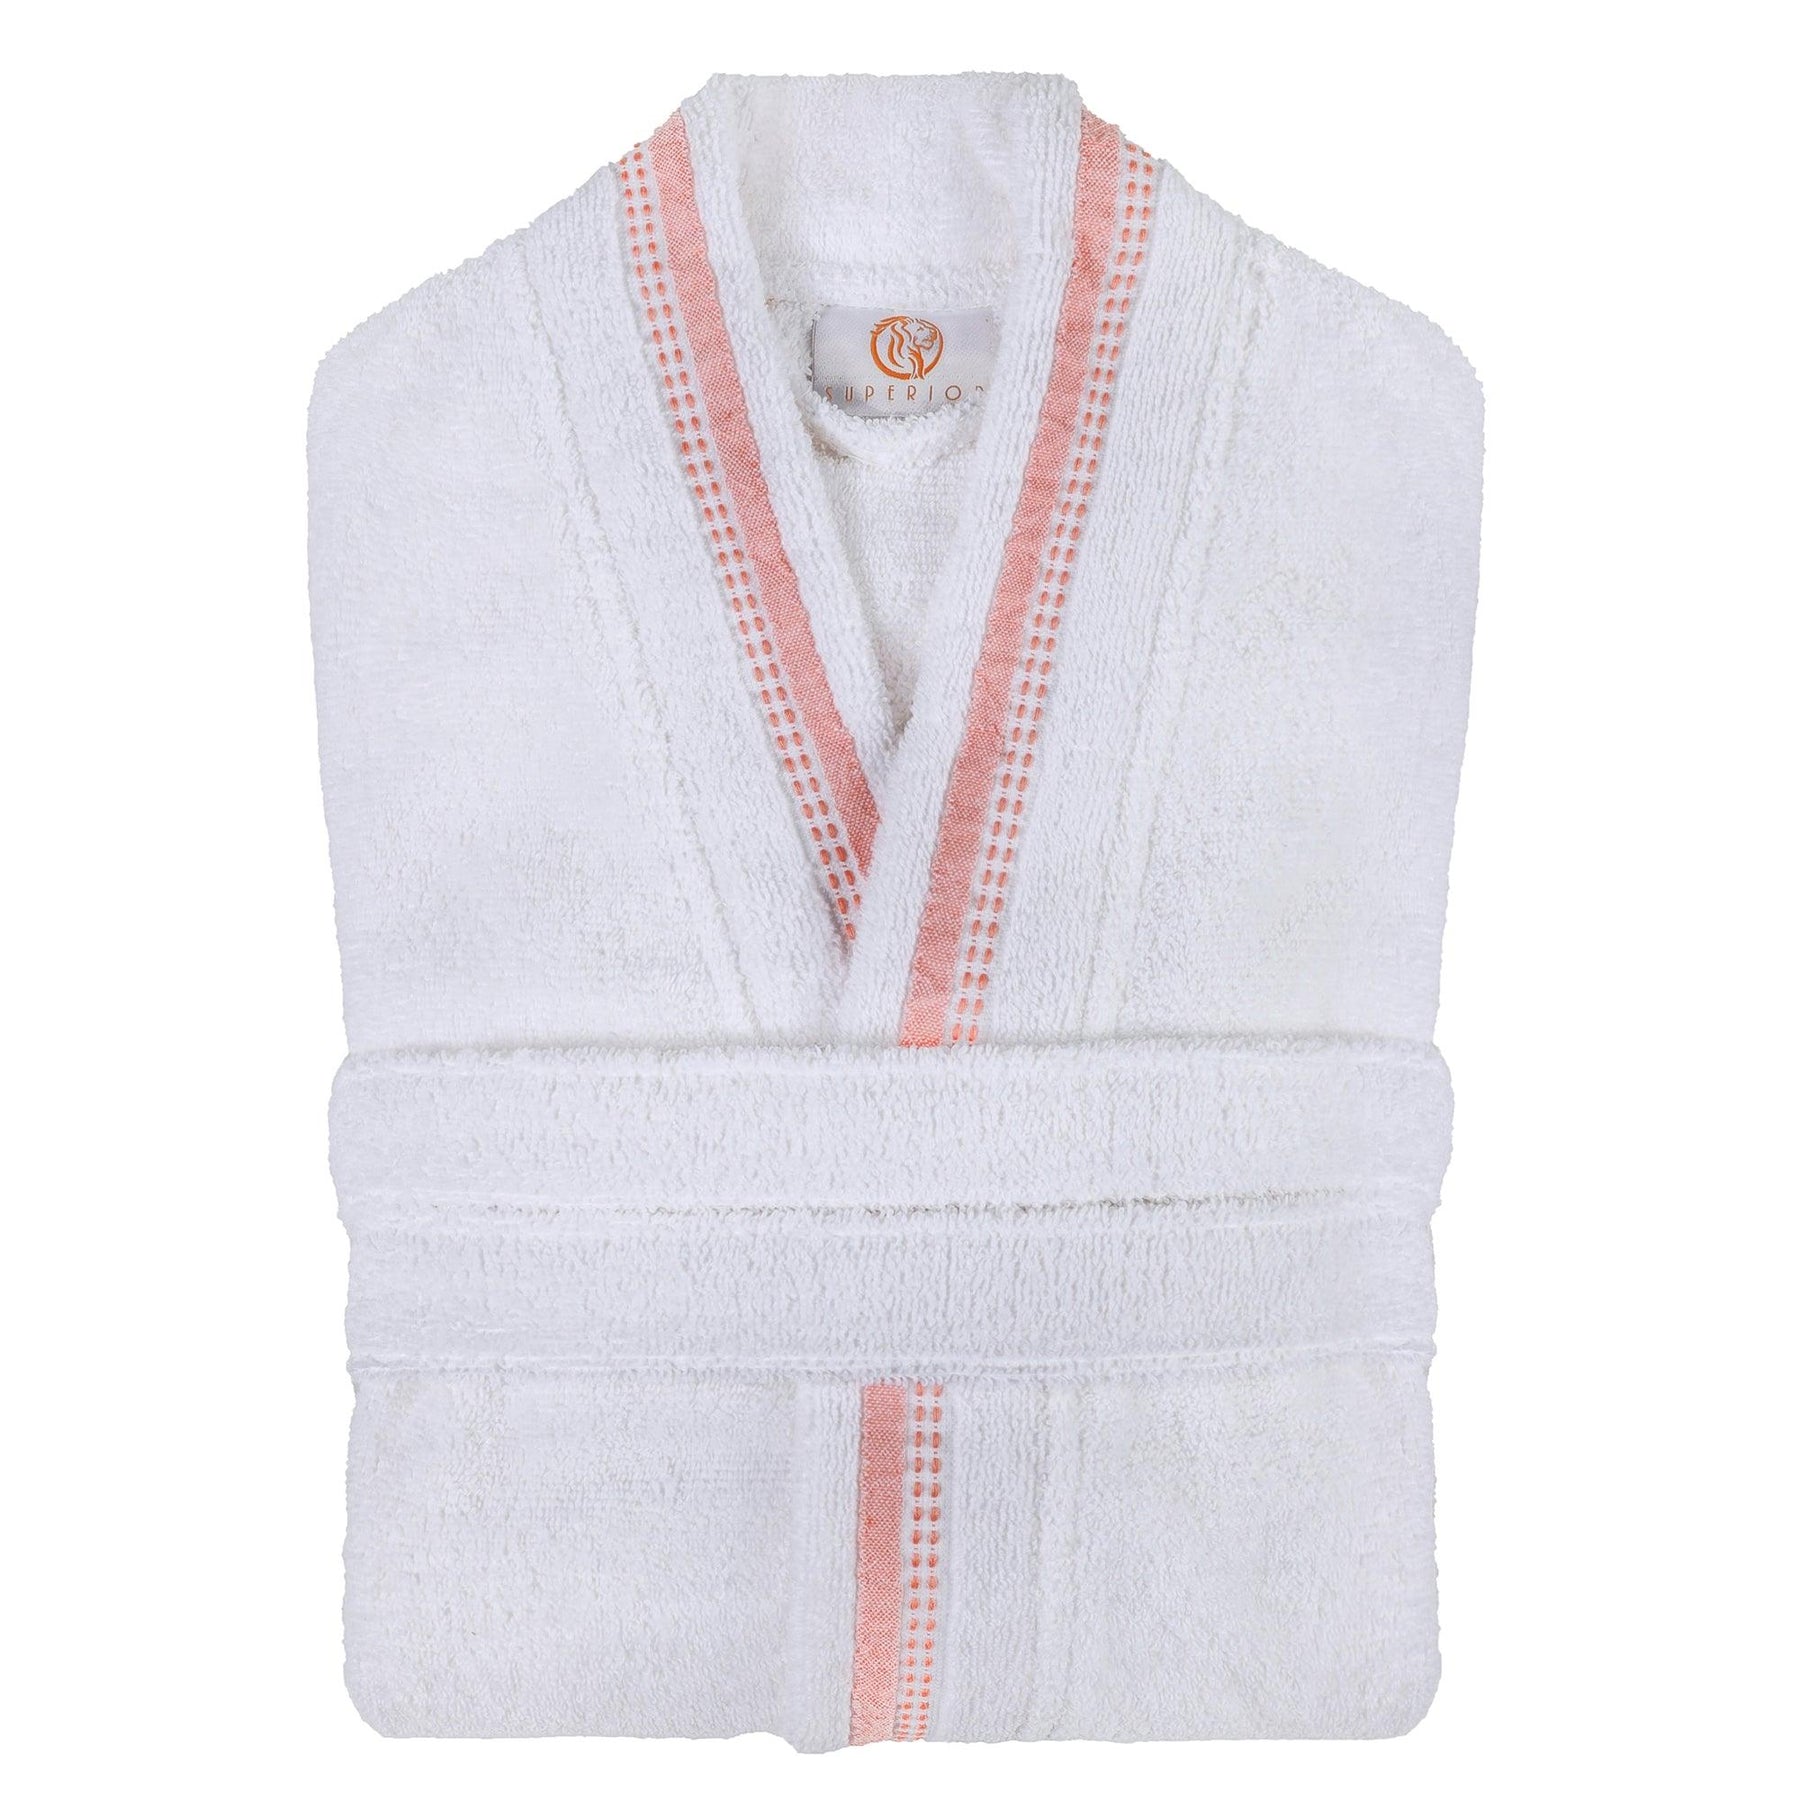  Turkish Cotton Terry Kimono Embroidered Super-Soft Unisex Bathrobe - White-Emberglow